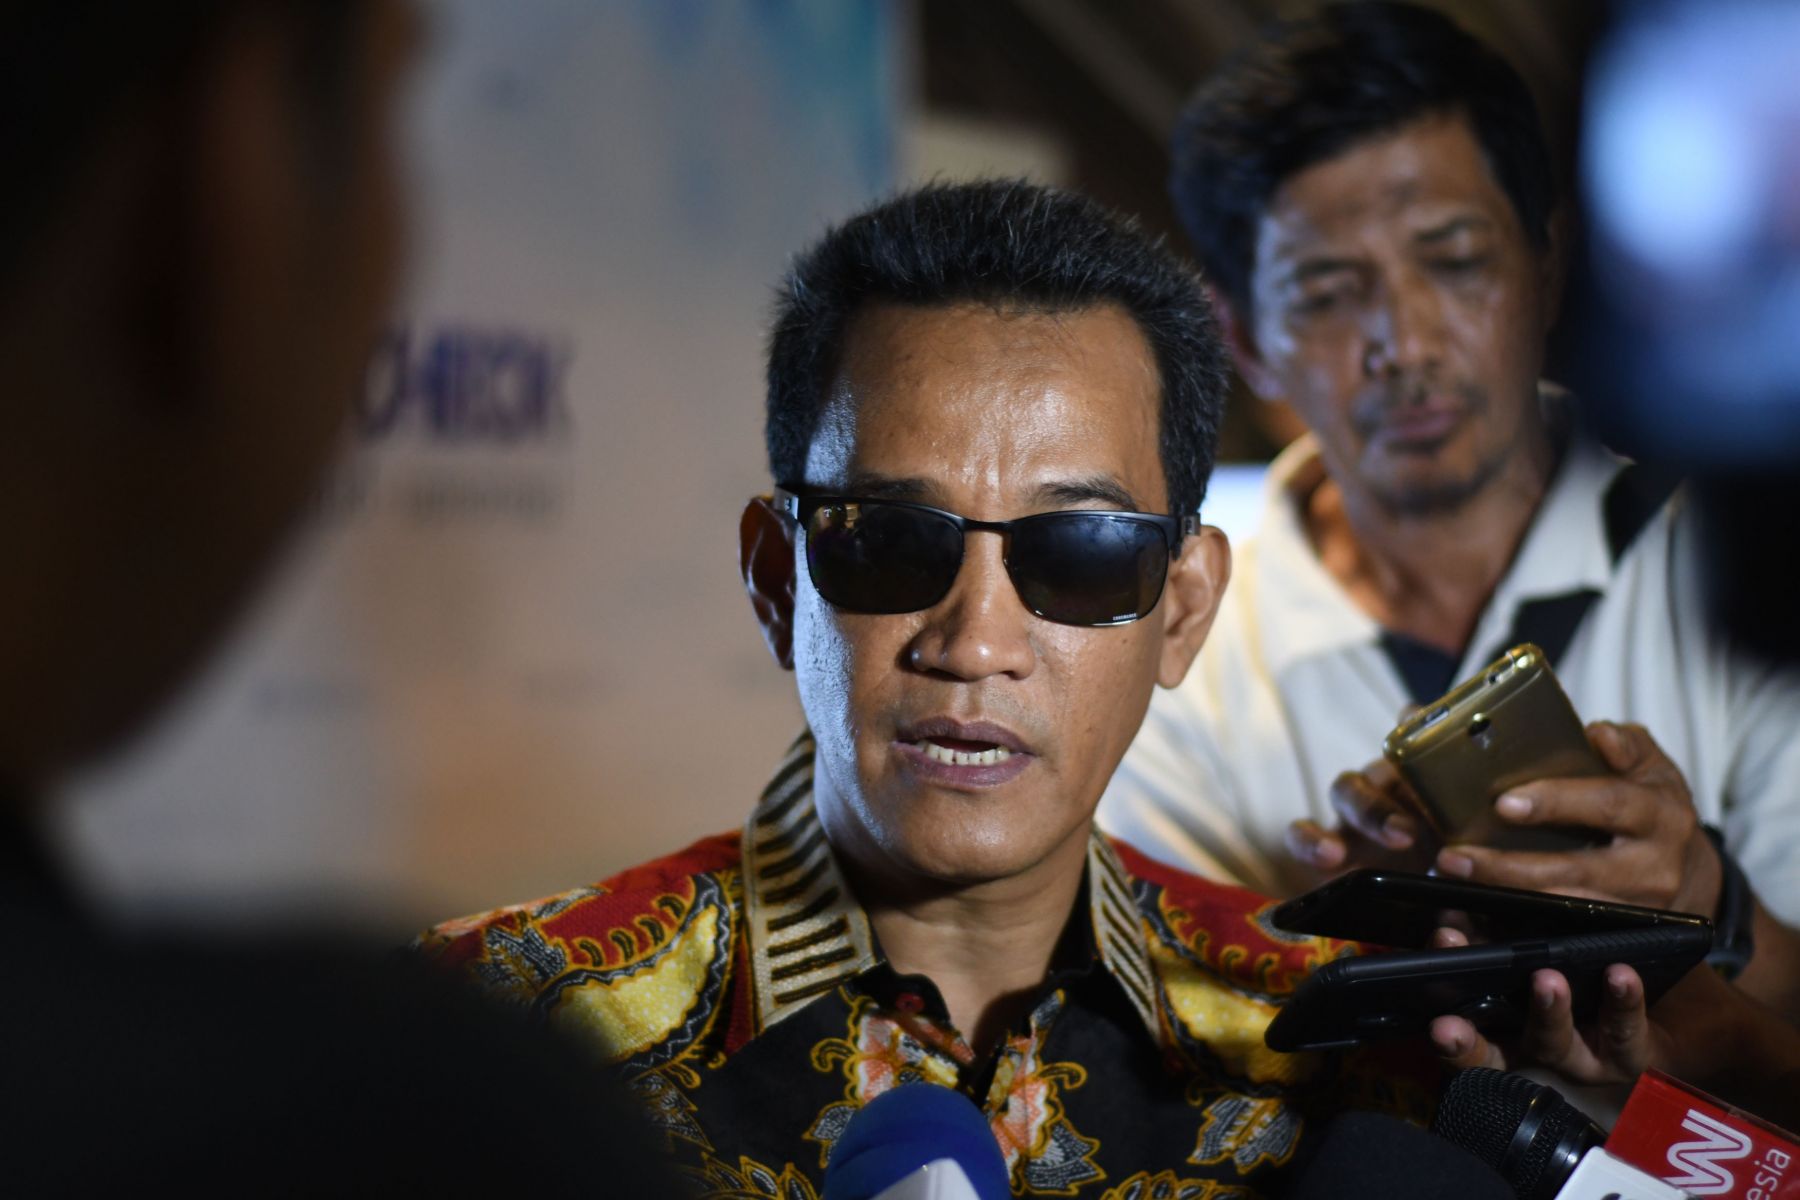 Usulan Refly Harun: Daripada Jokowi Terus Berkuasa, Mending Amandemen UUD Perpendek Masa Jabatan